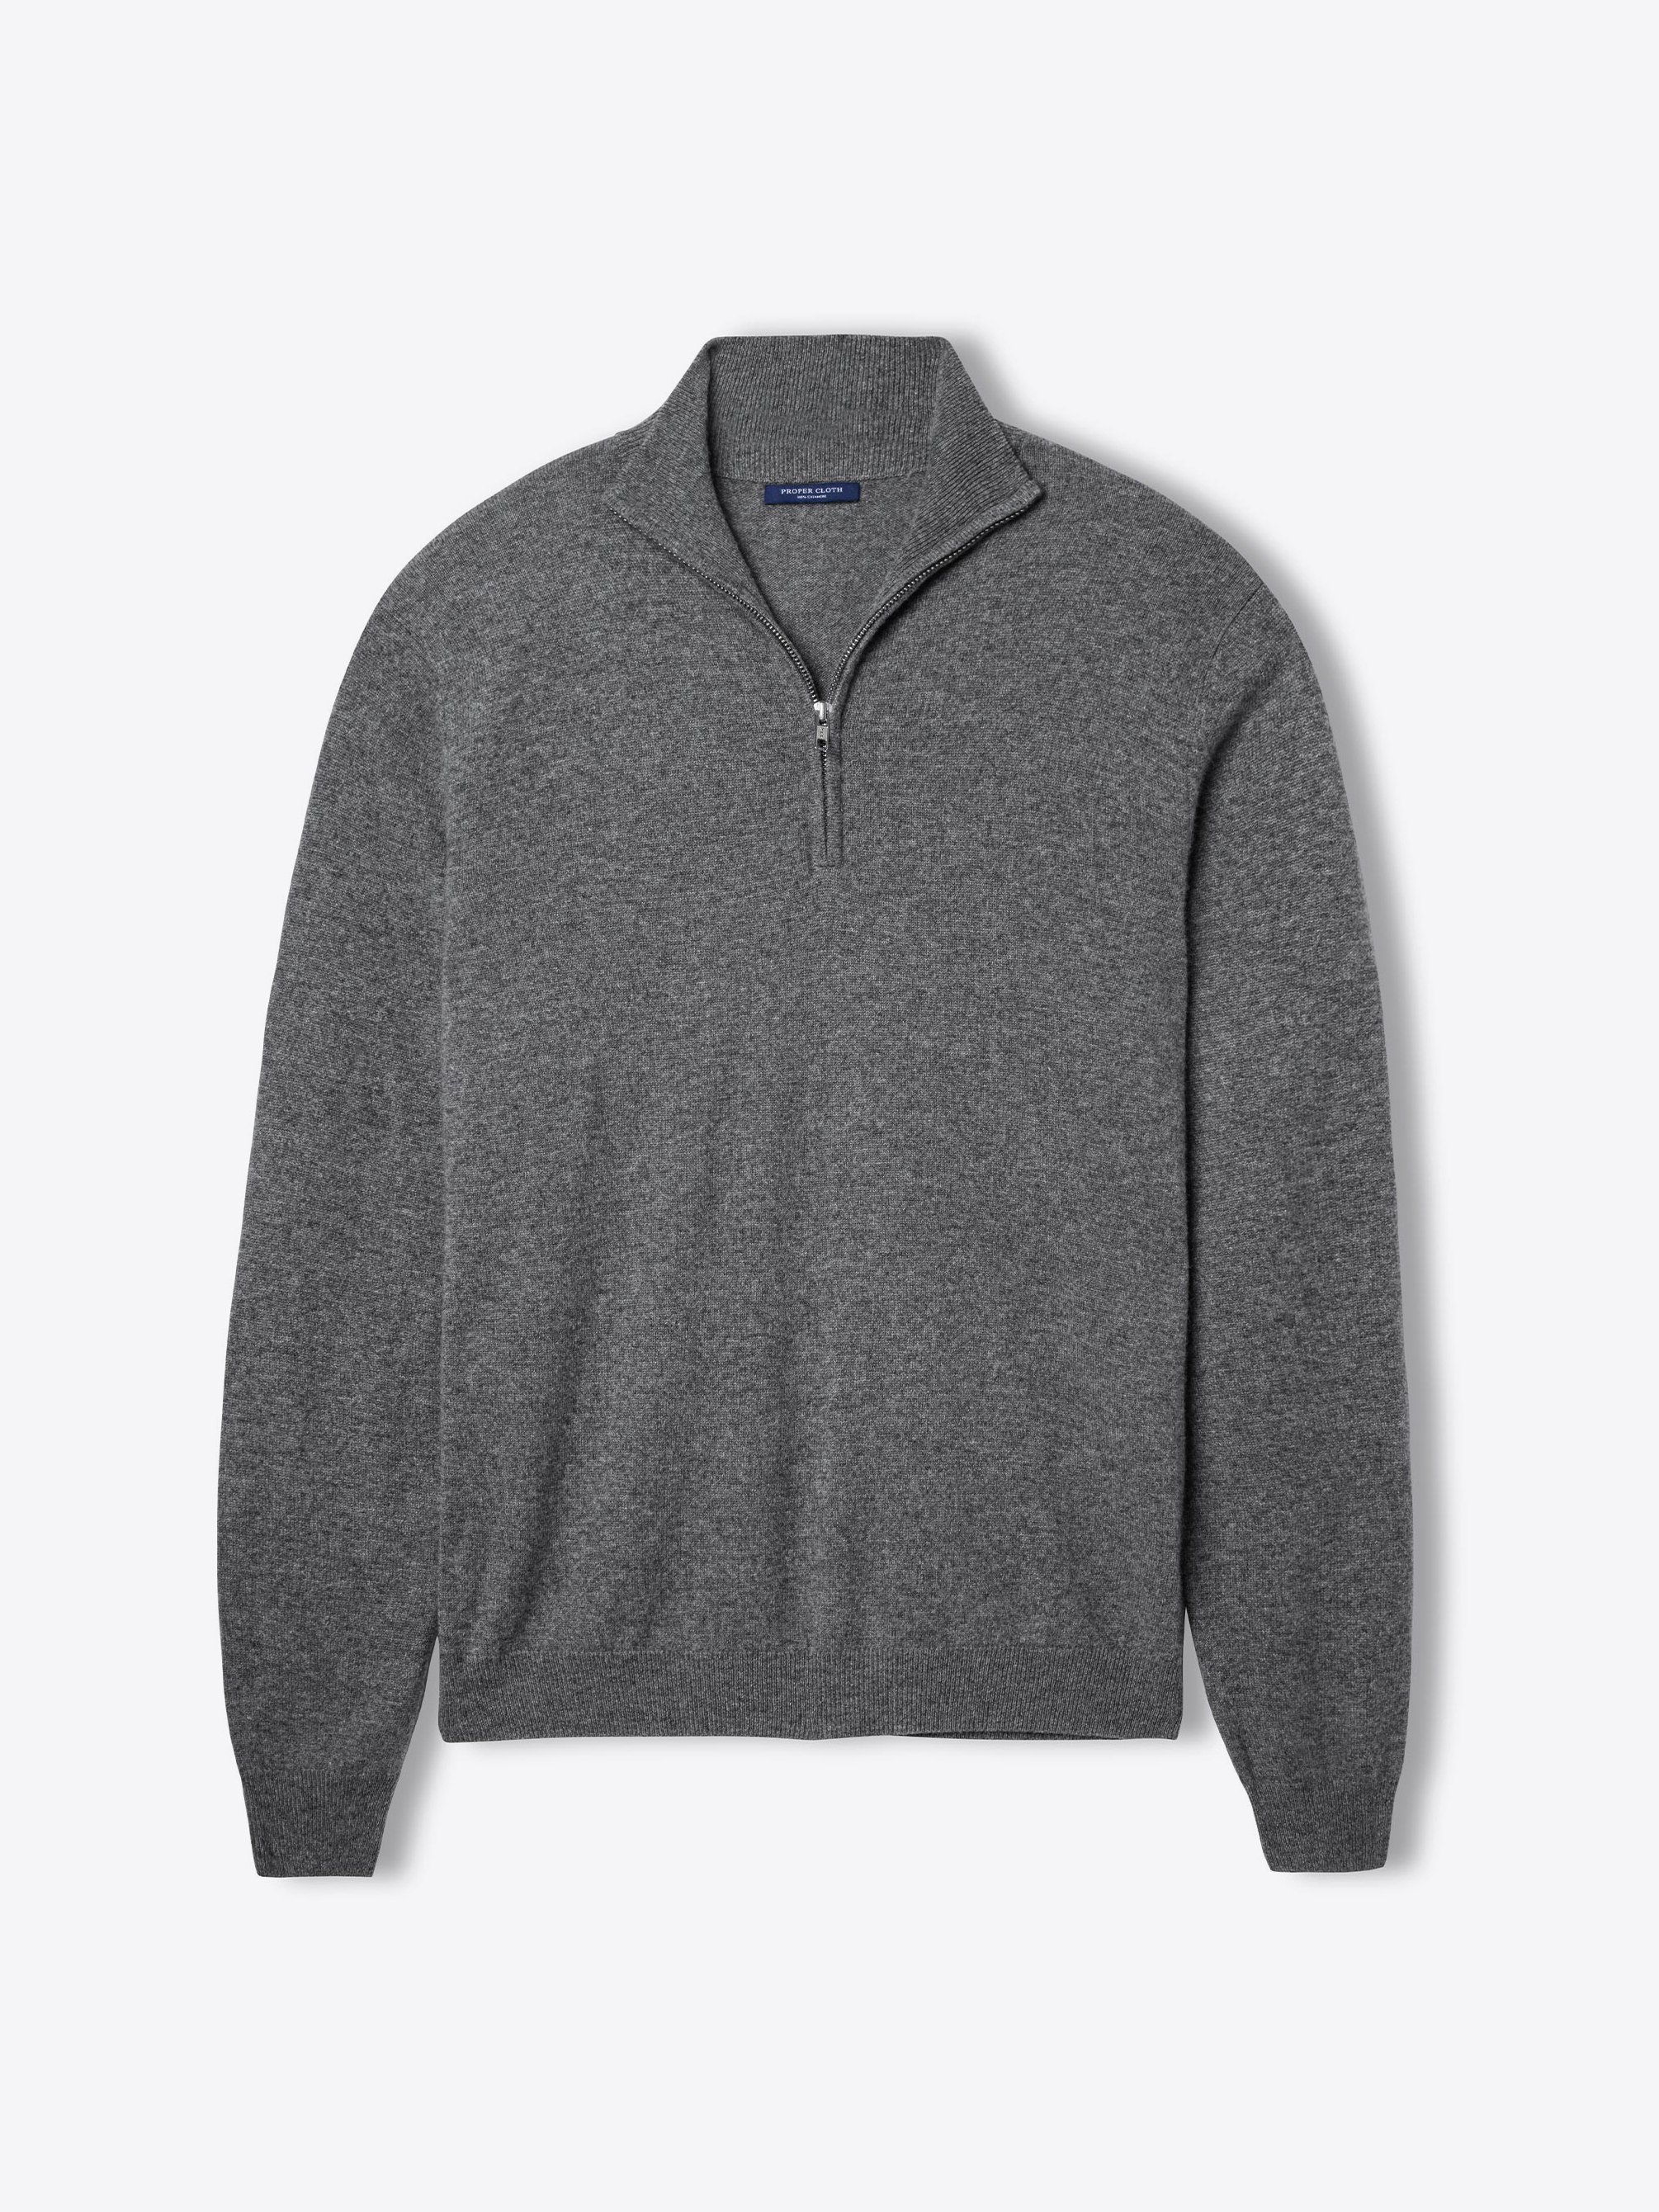 Zoom Image of Grey Cashmere Half-Zip Sweater